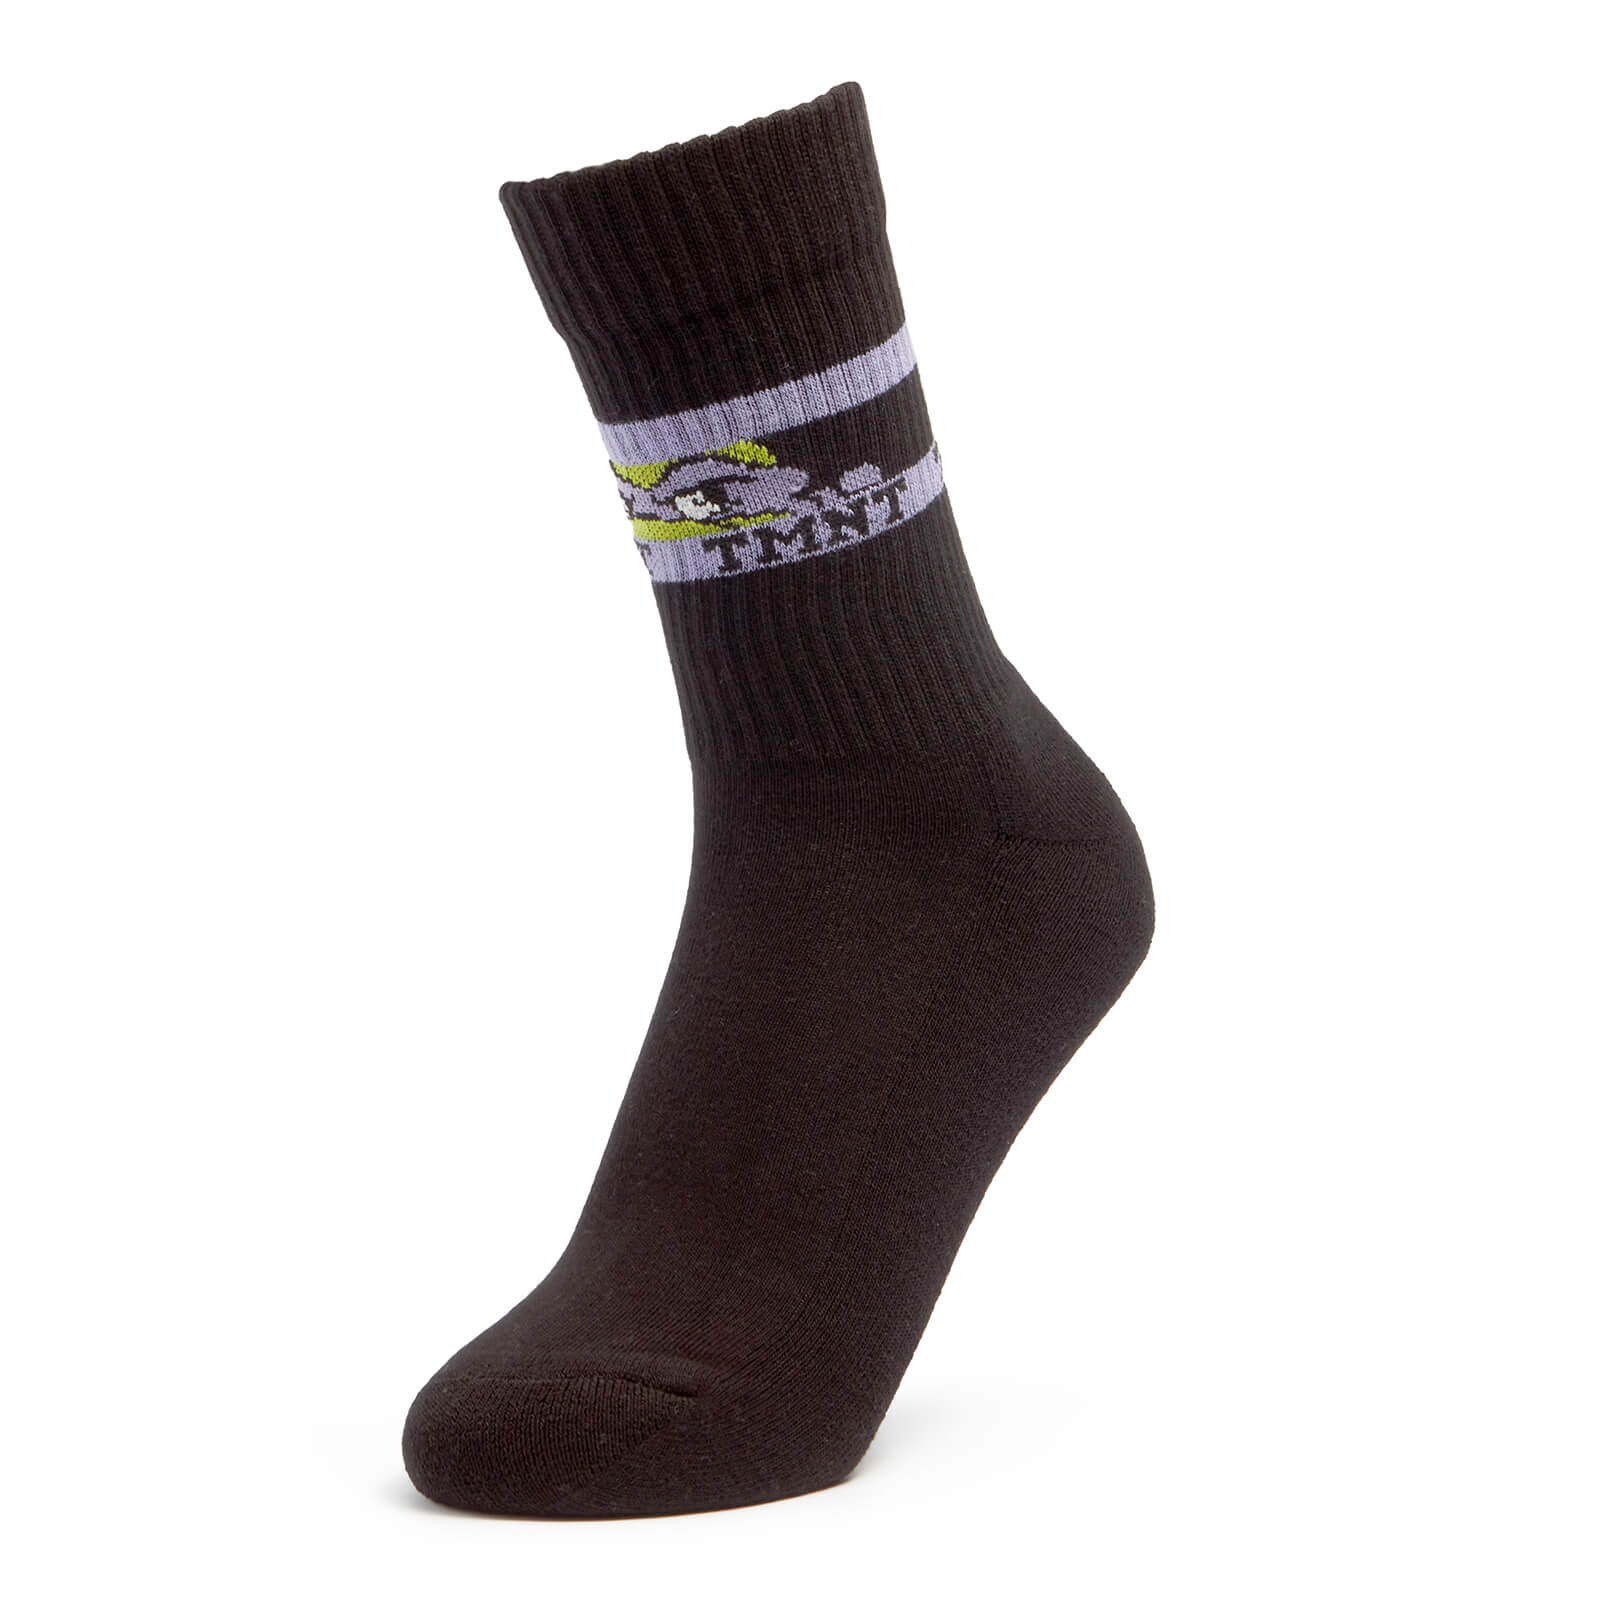 Men's TMNT Sports Socks - Black - UK 8-11